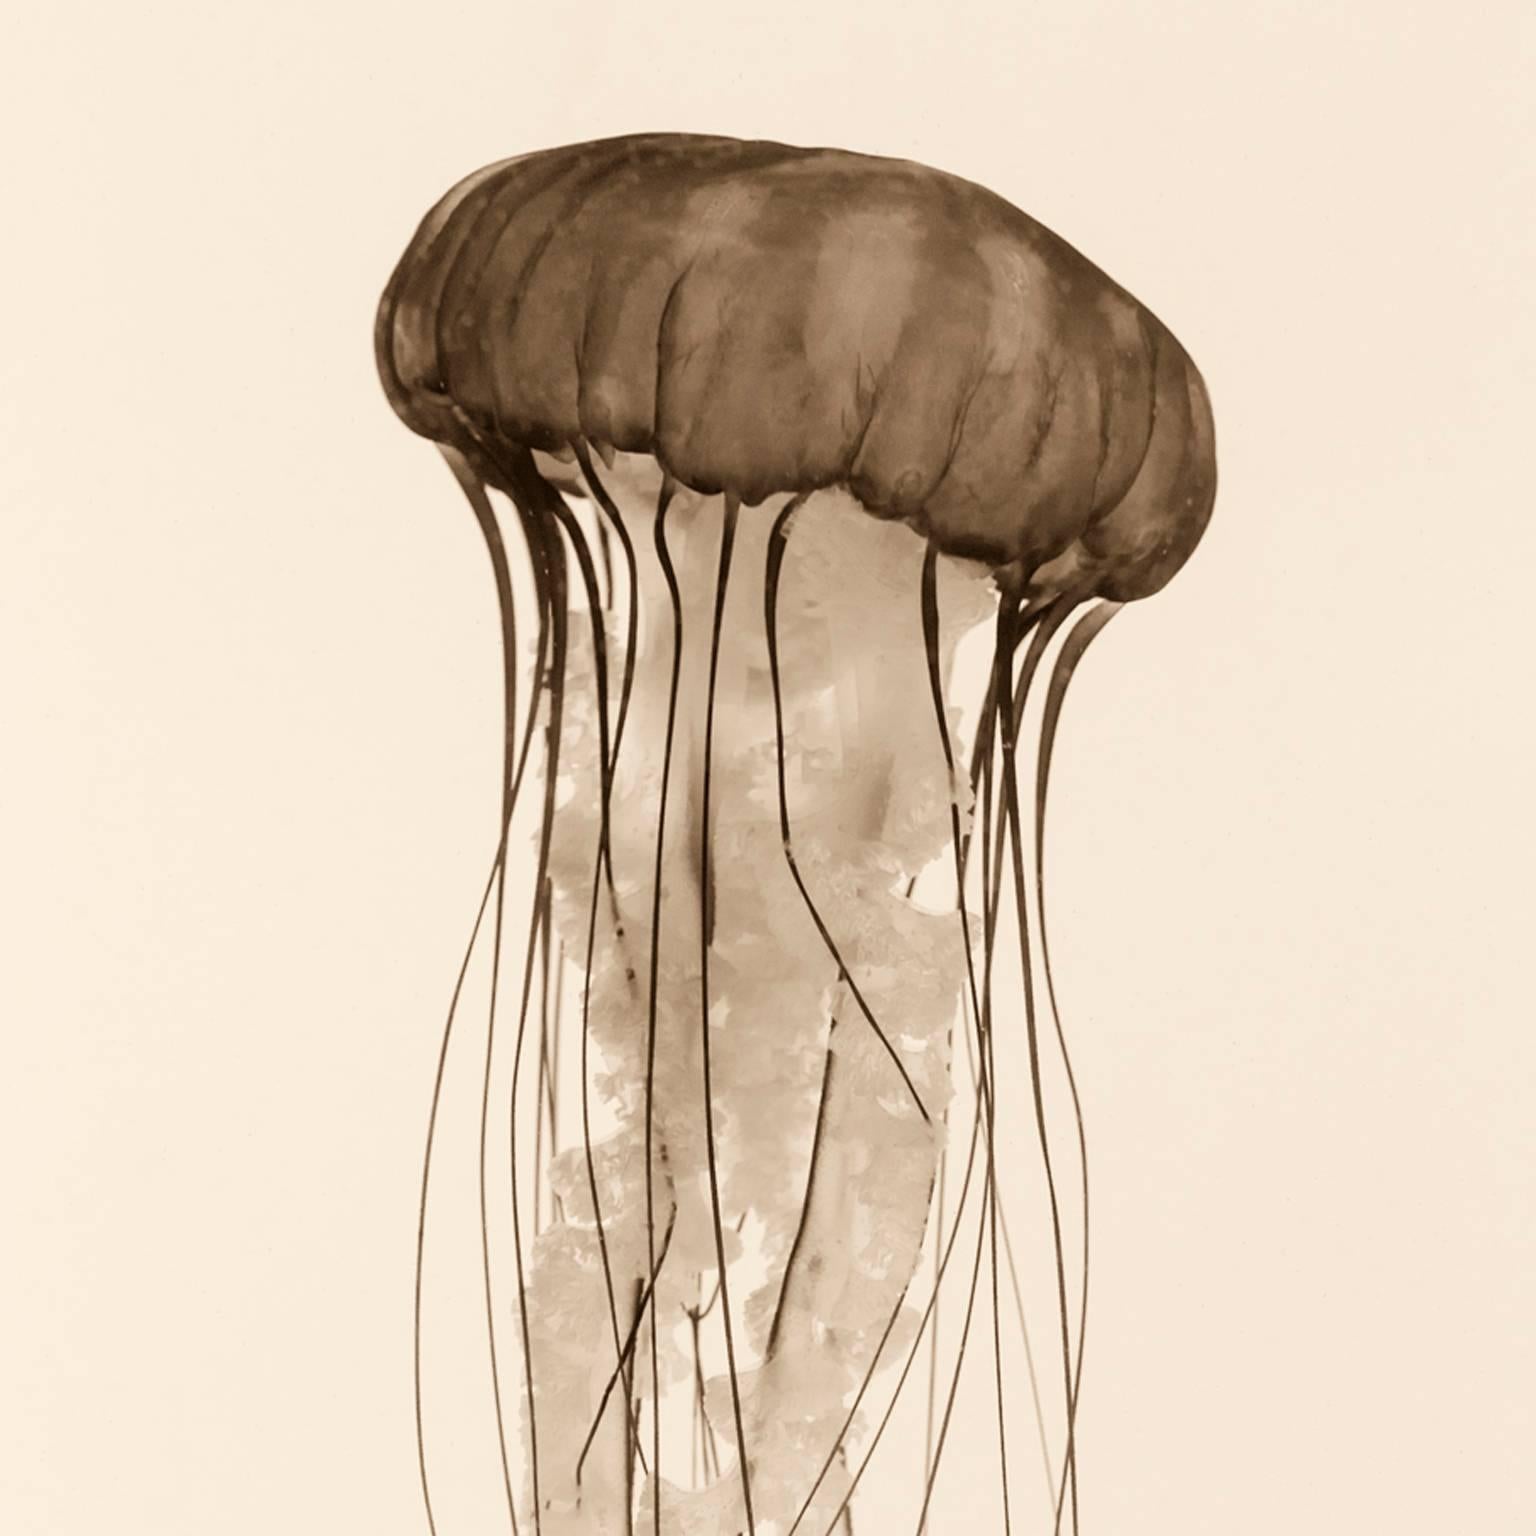 Pacific Sea Nettle - Photograph by Massimo Di Lorenzo